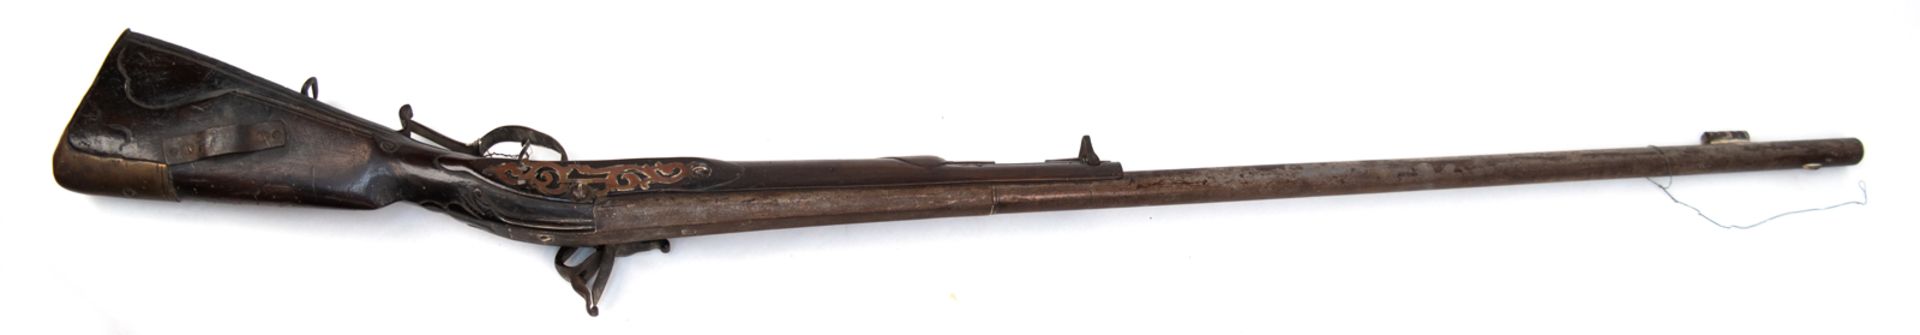 Steinschloßgewehr, 18. Jh., nicht funktionstüchtig, Ladestock fehlt, starke Gebrauchspuren, inaktiv - Image 2 of 2